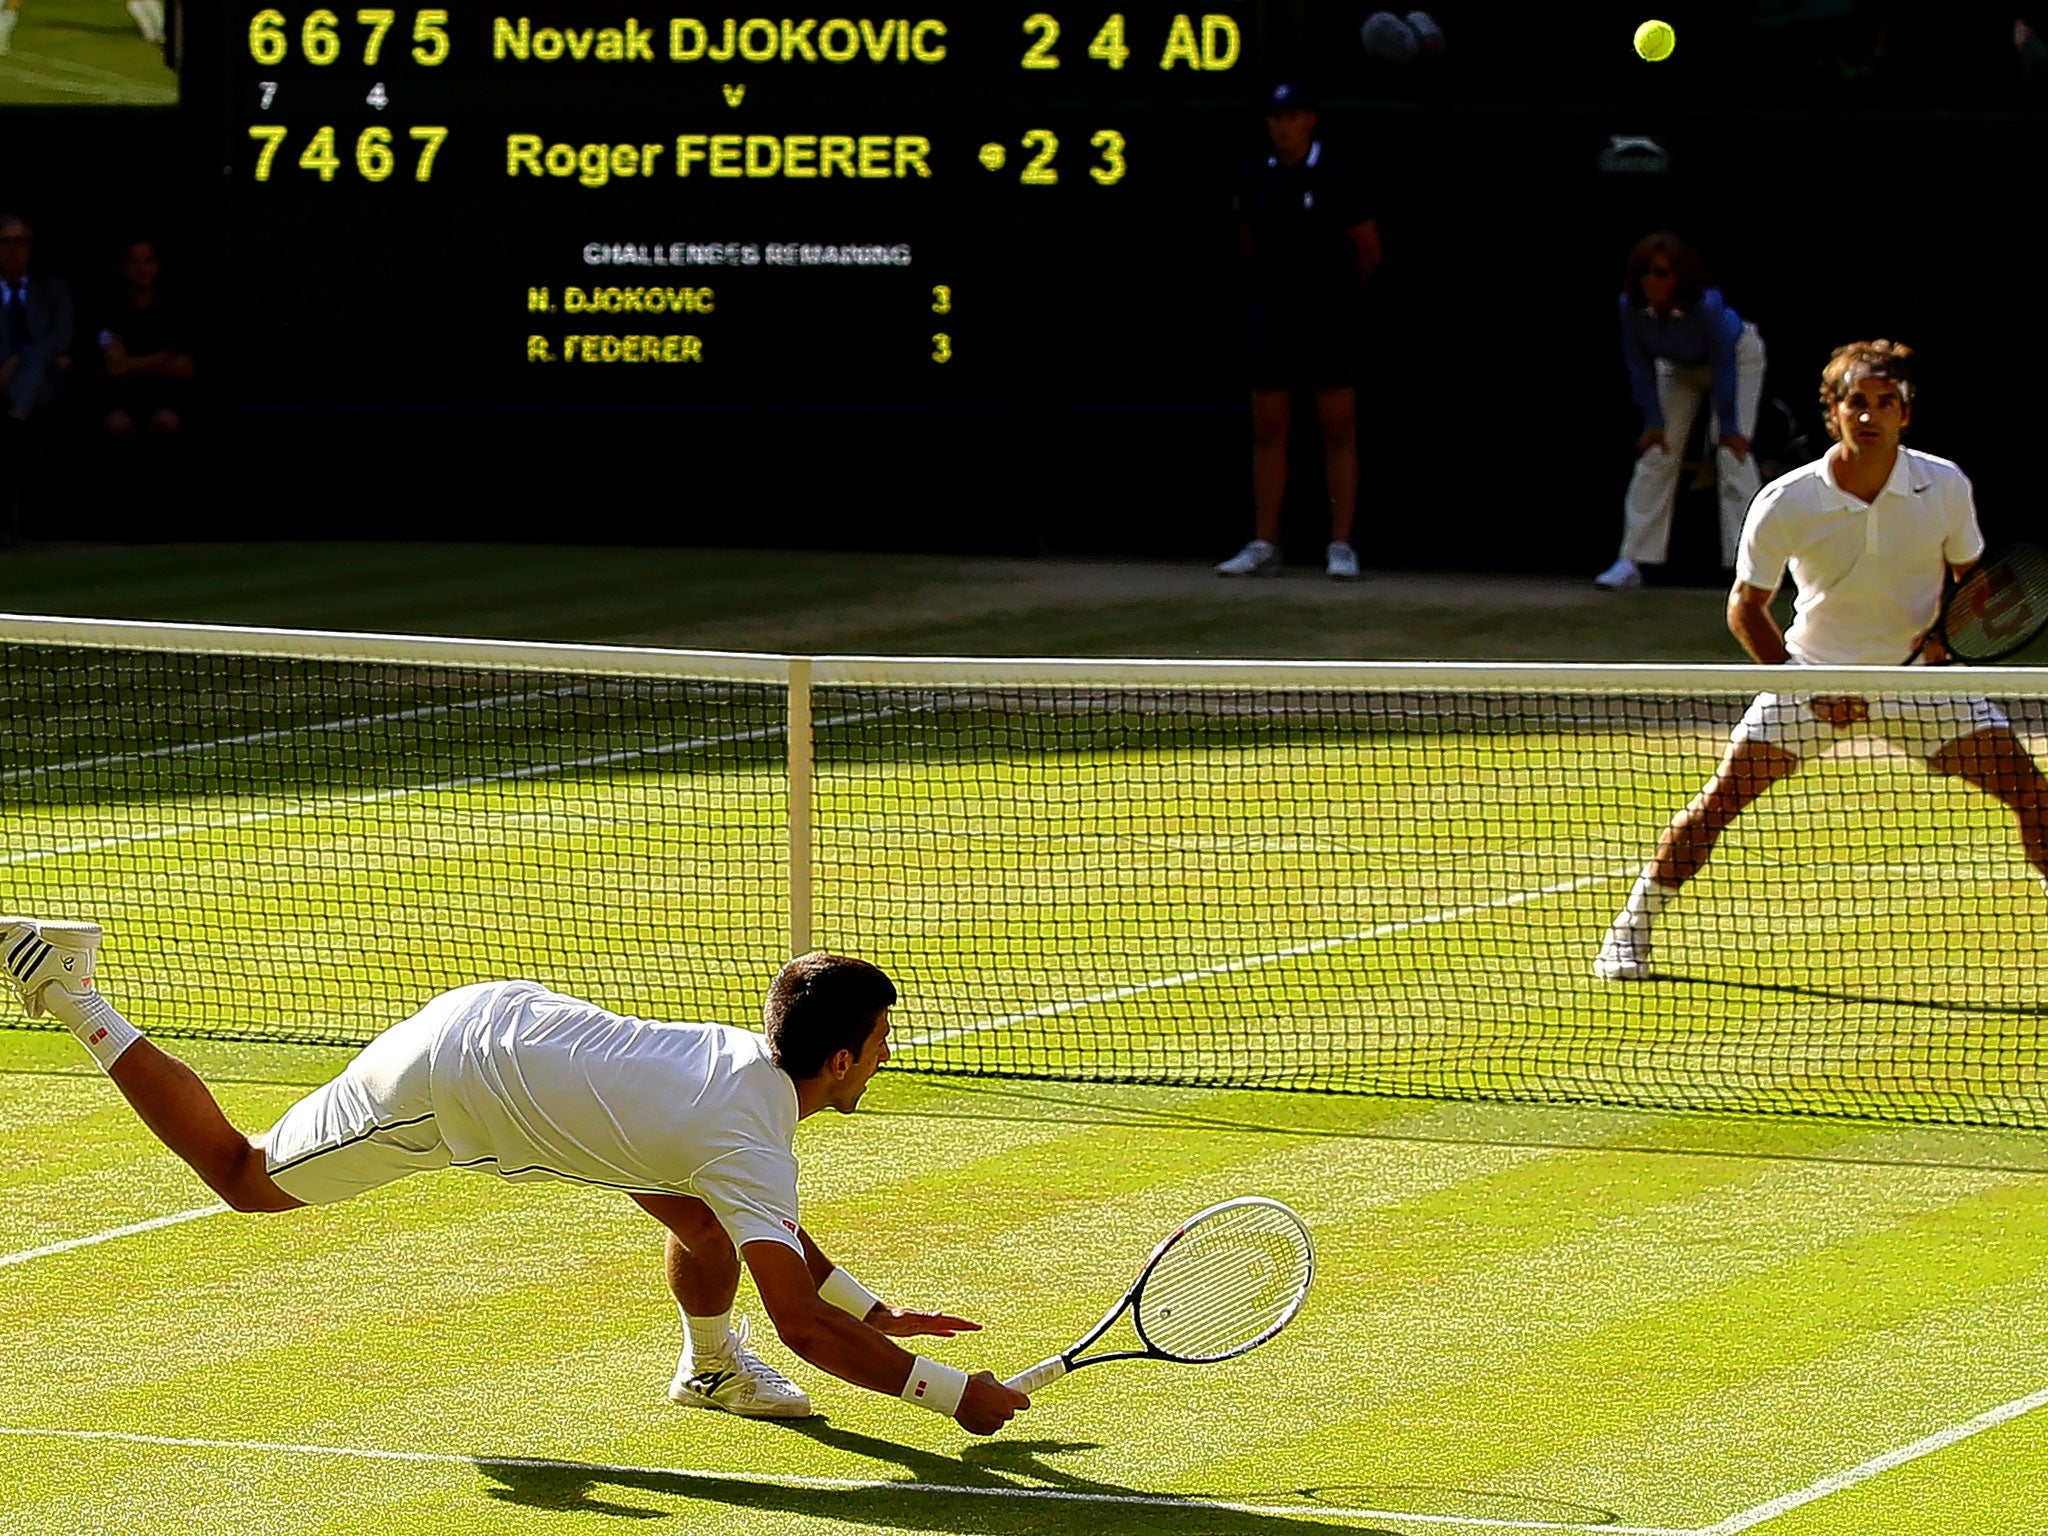 Novak Djokovic dives to make a return during last year’s final against Roger Federer